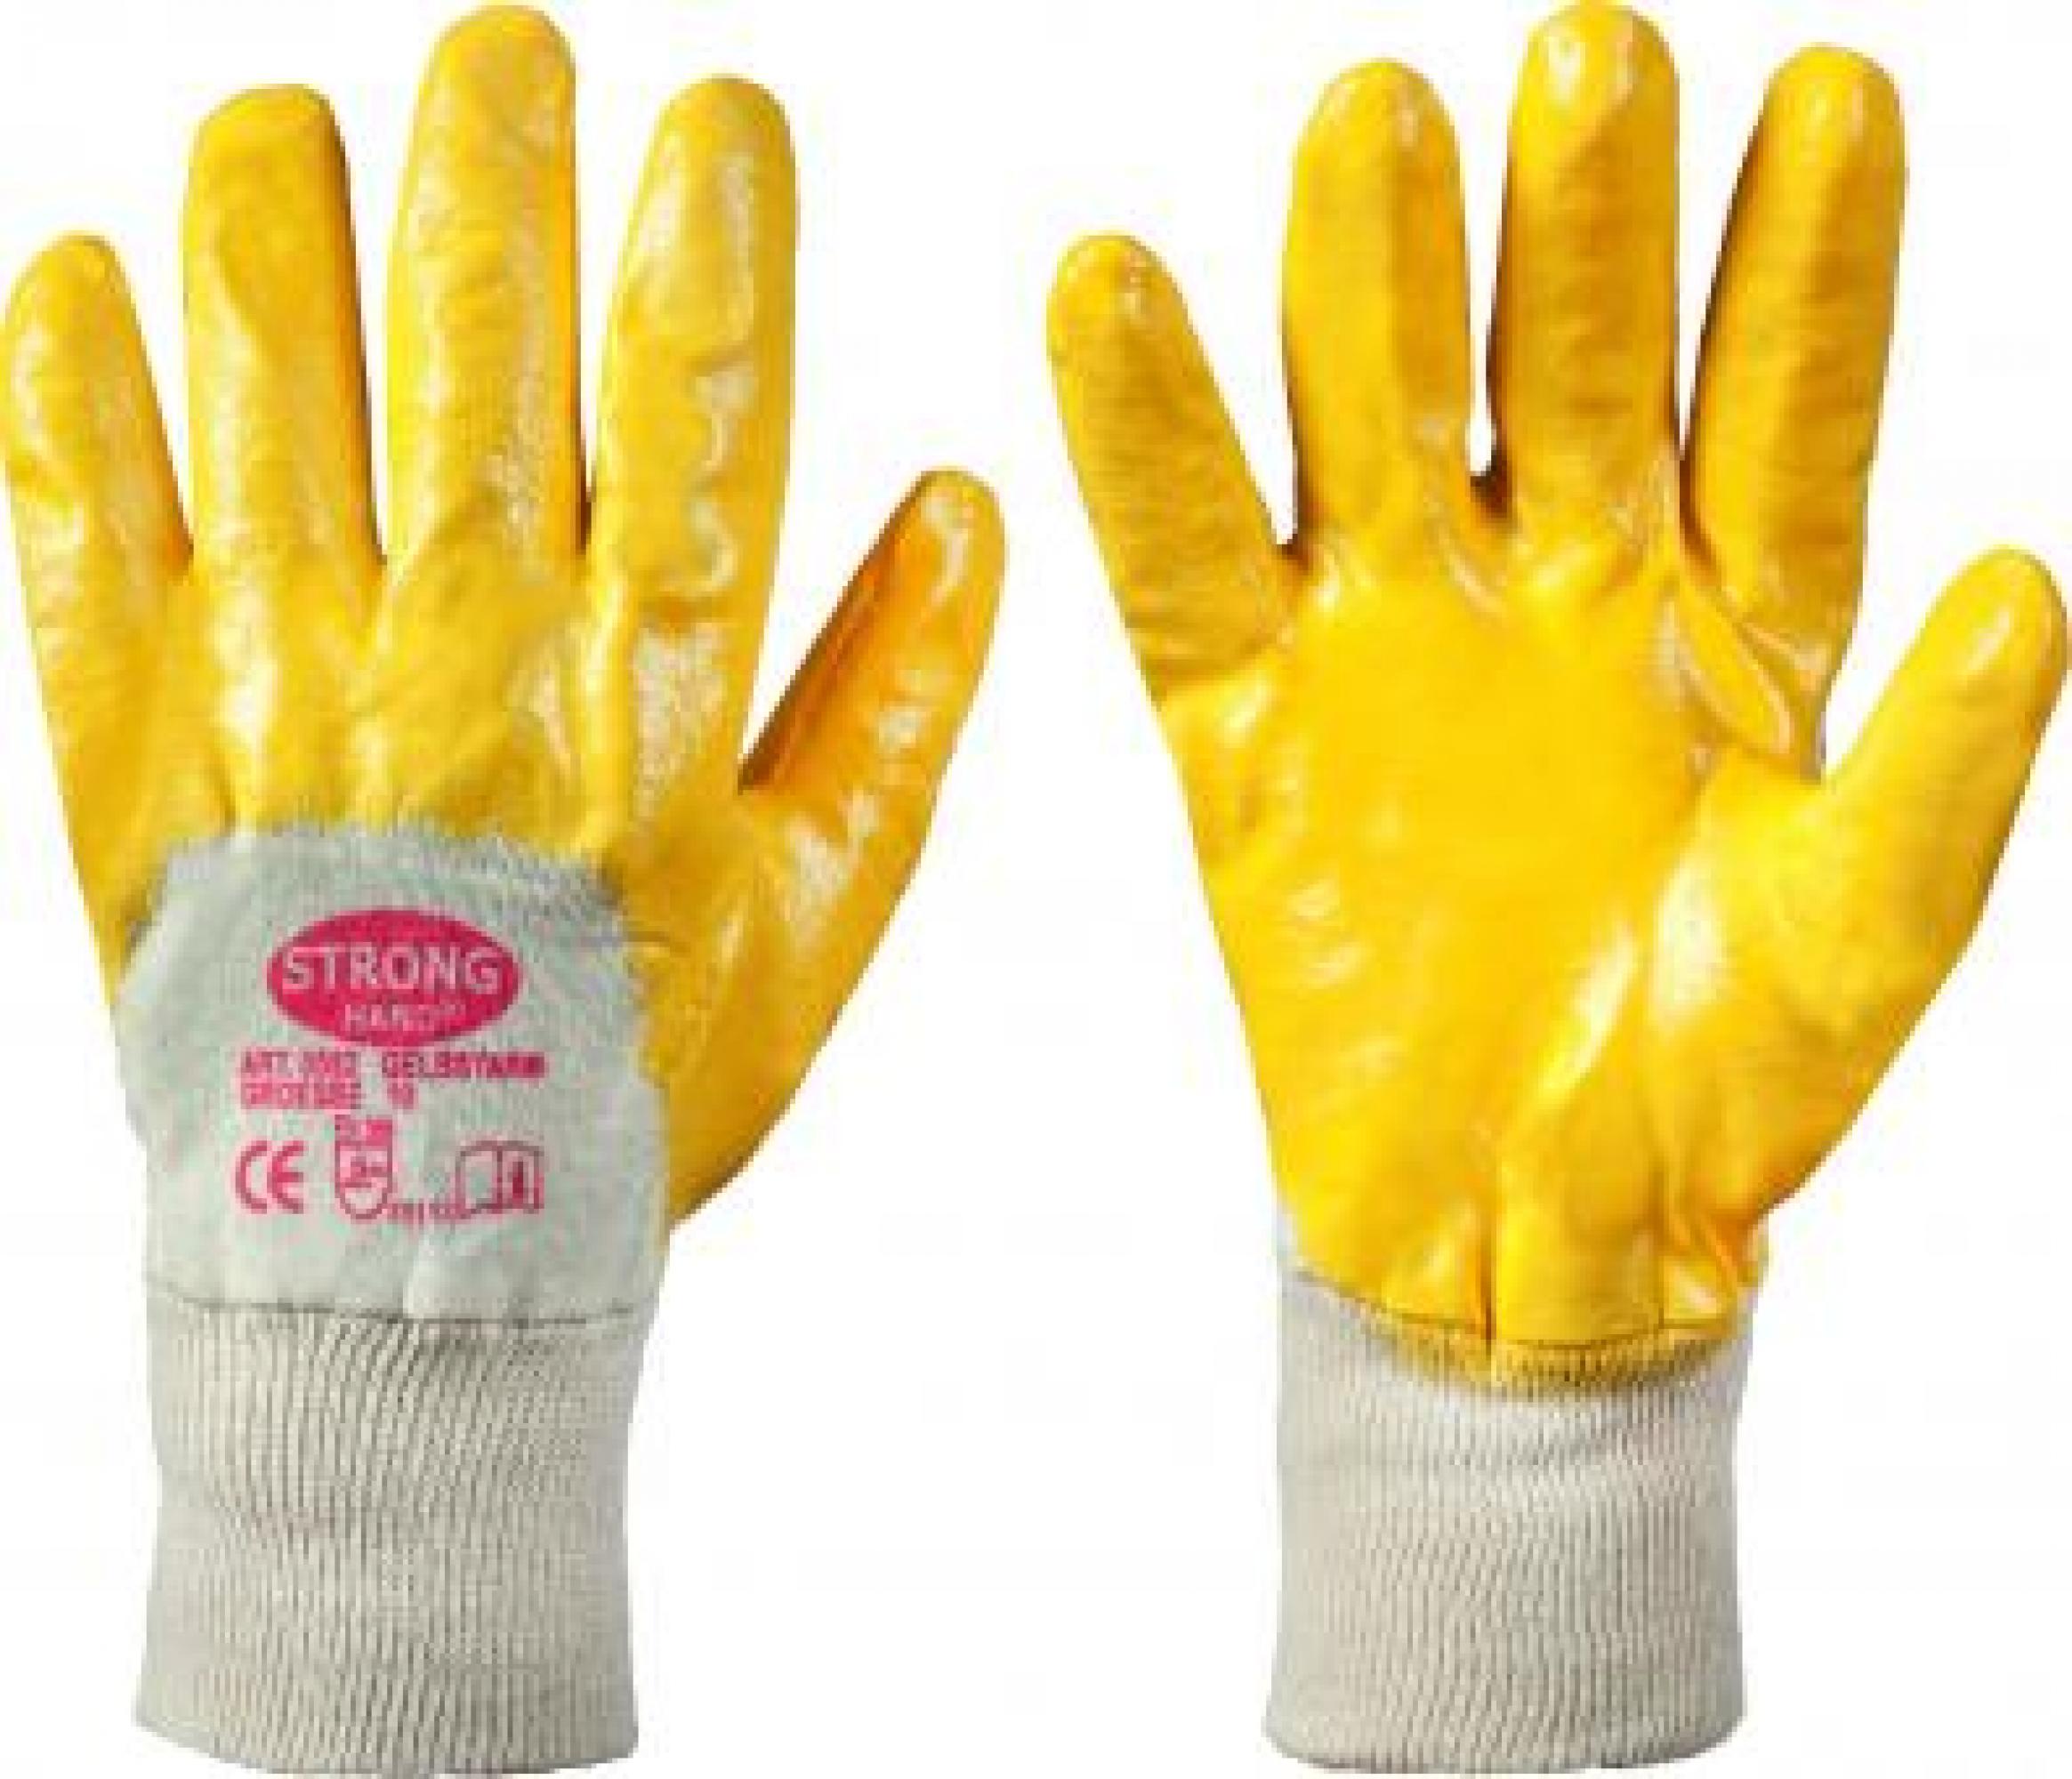 Gelbstar Stronghand Handschuhe "Der Monatsknaller - Berusfsbekleidung"